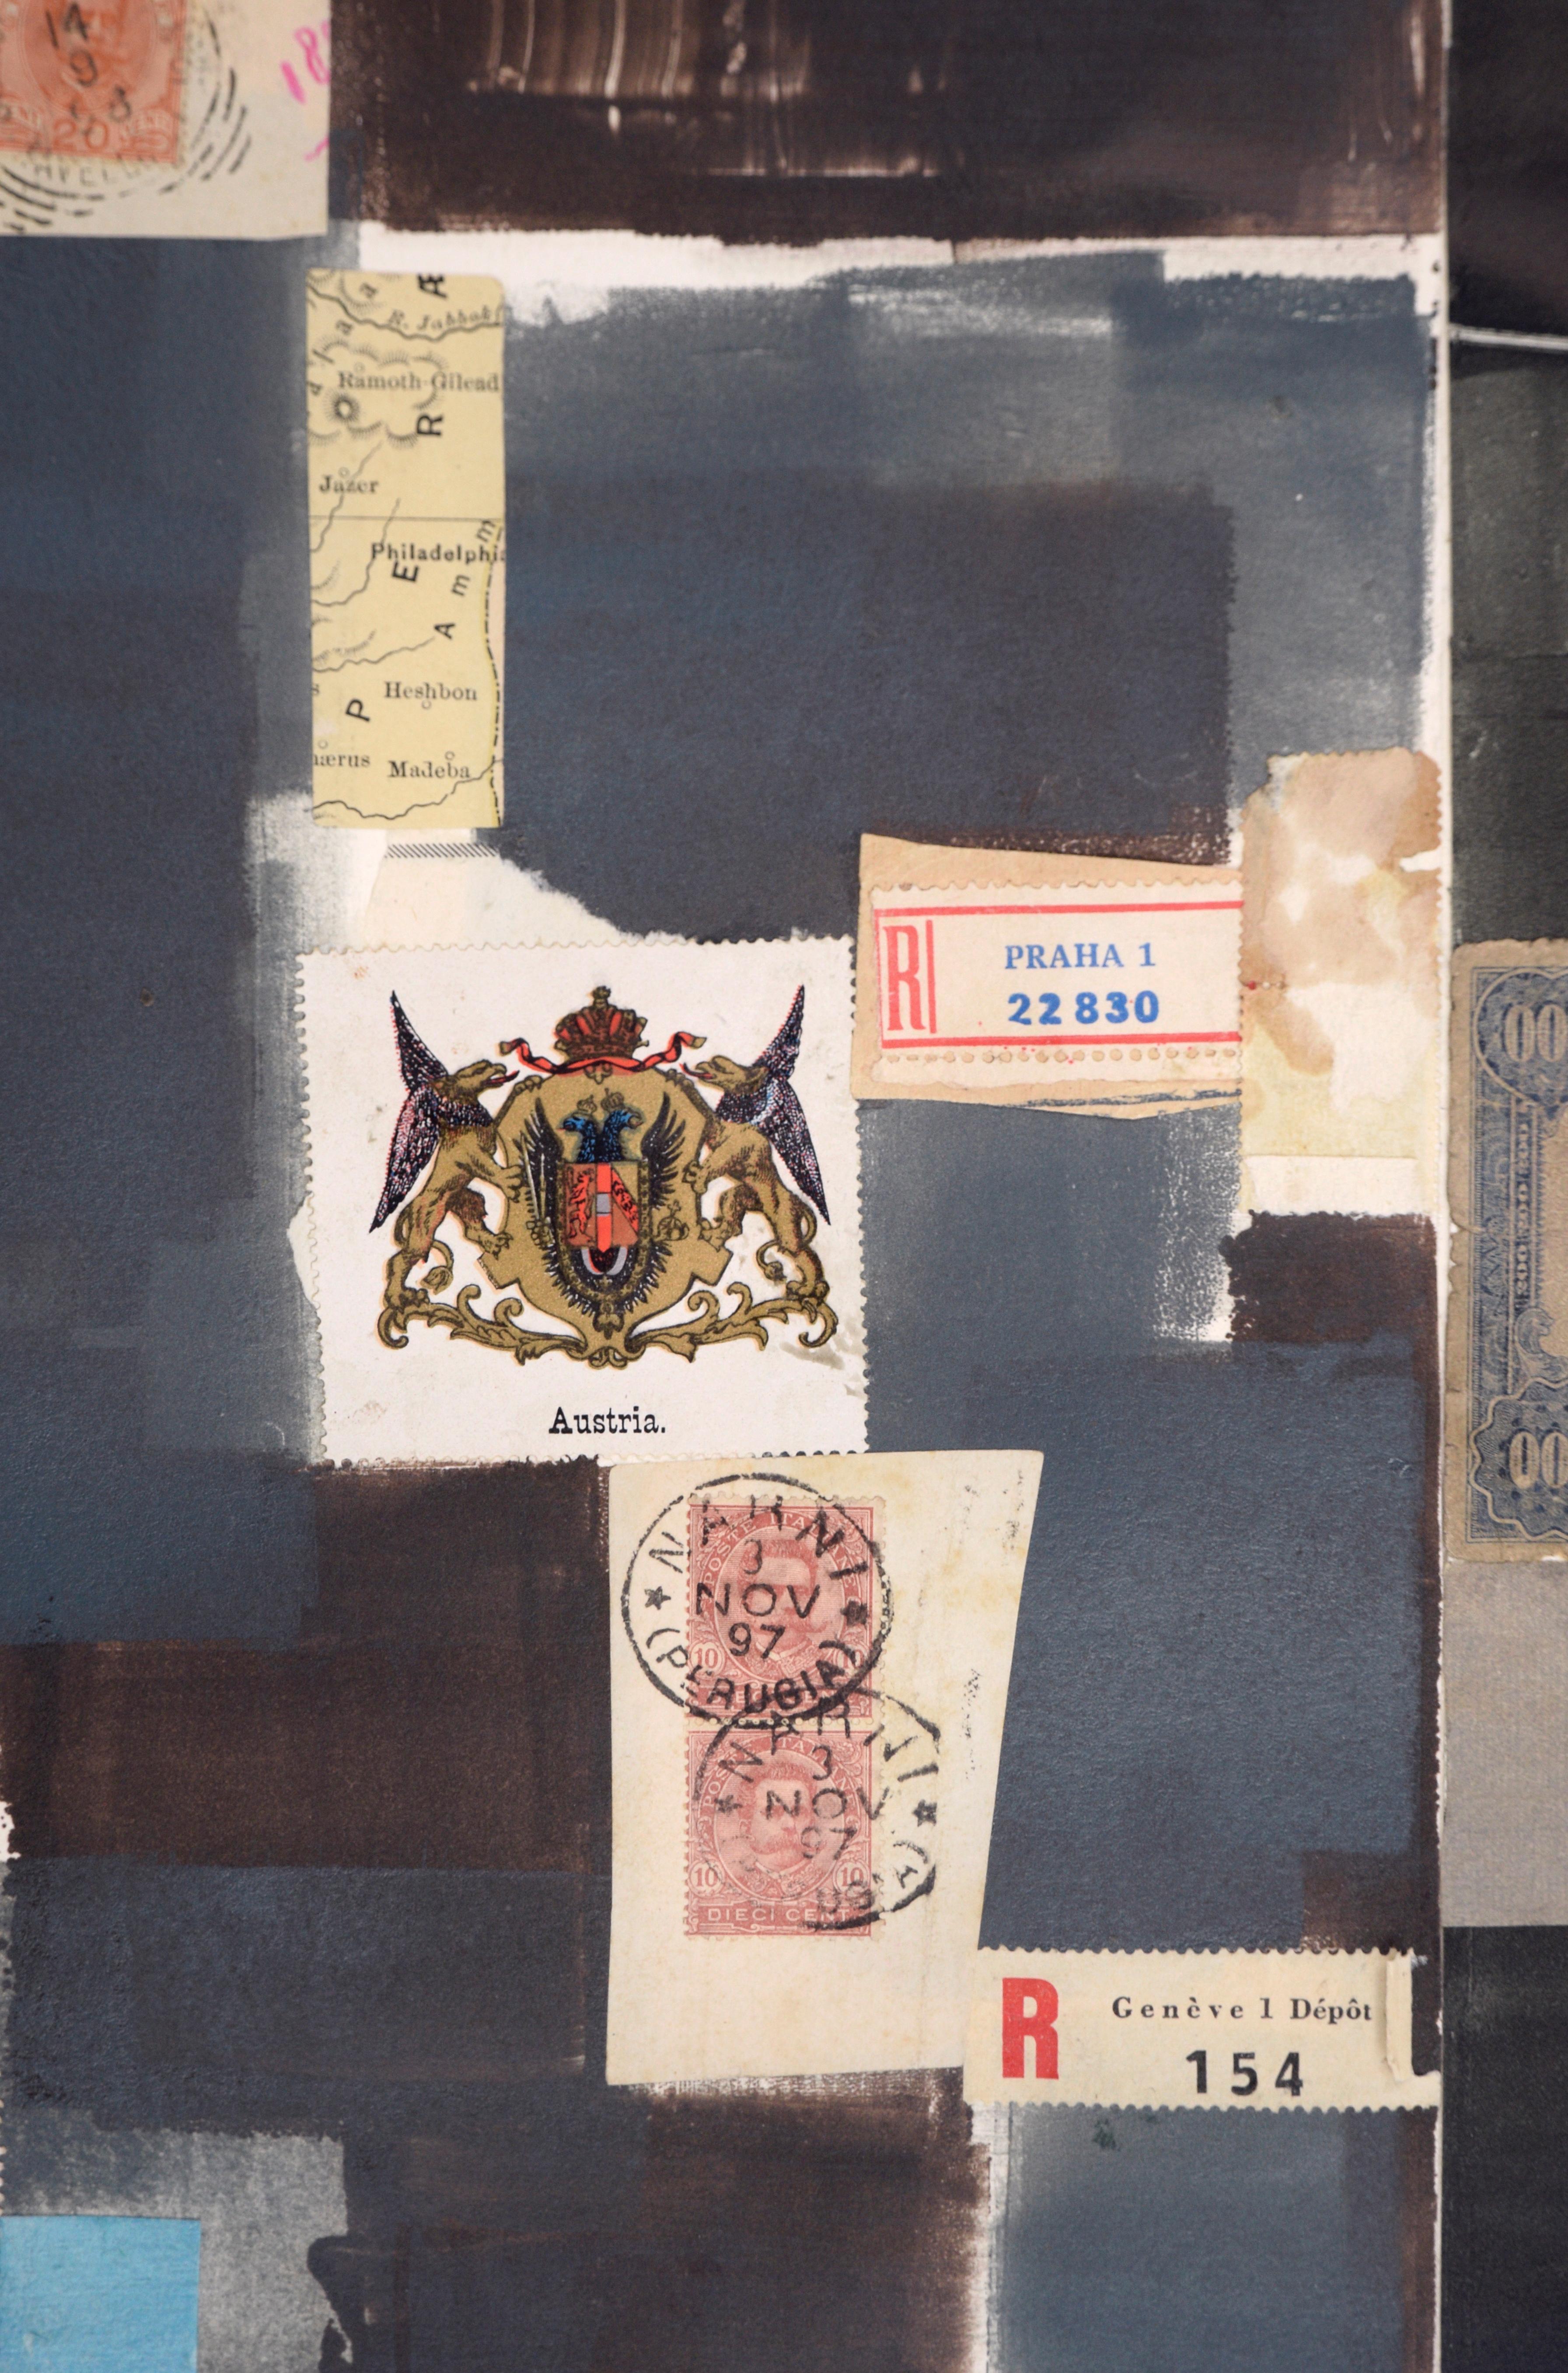 Magnifique collage expressionniste abstrait de l'artiste de la Bay Area Michael Pauker (américain, né en 1957). Composée de deux sections de noir et de bleu marine, cette pièce présente des couches de profondeur, tant dans l'aquarelle que dans